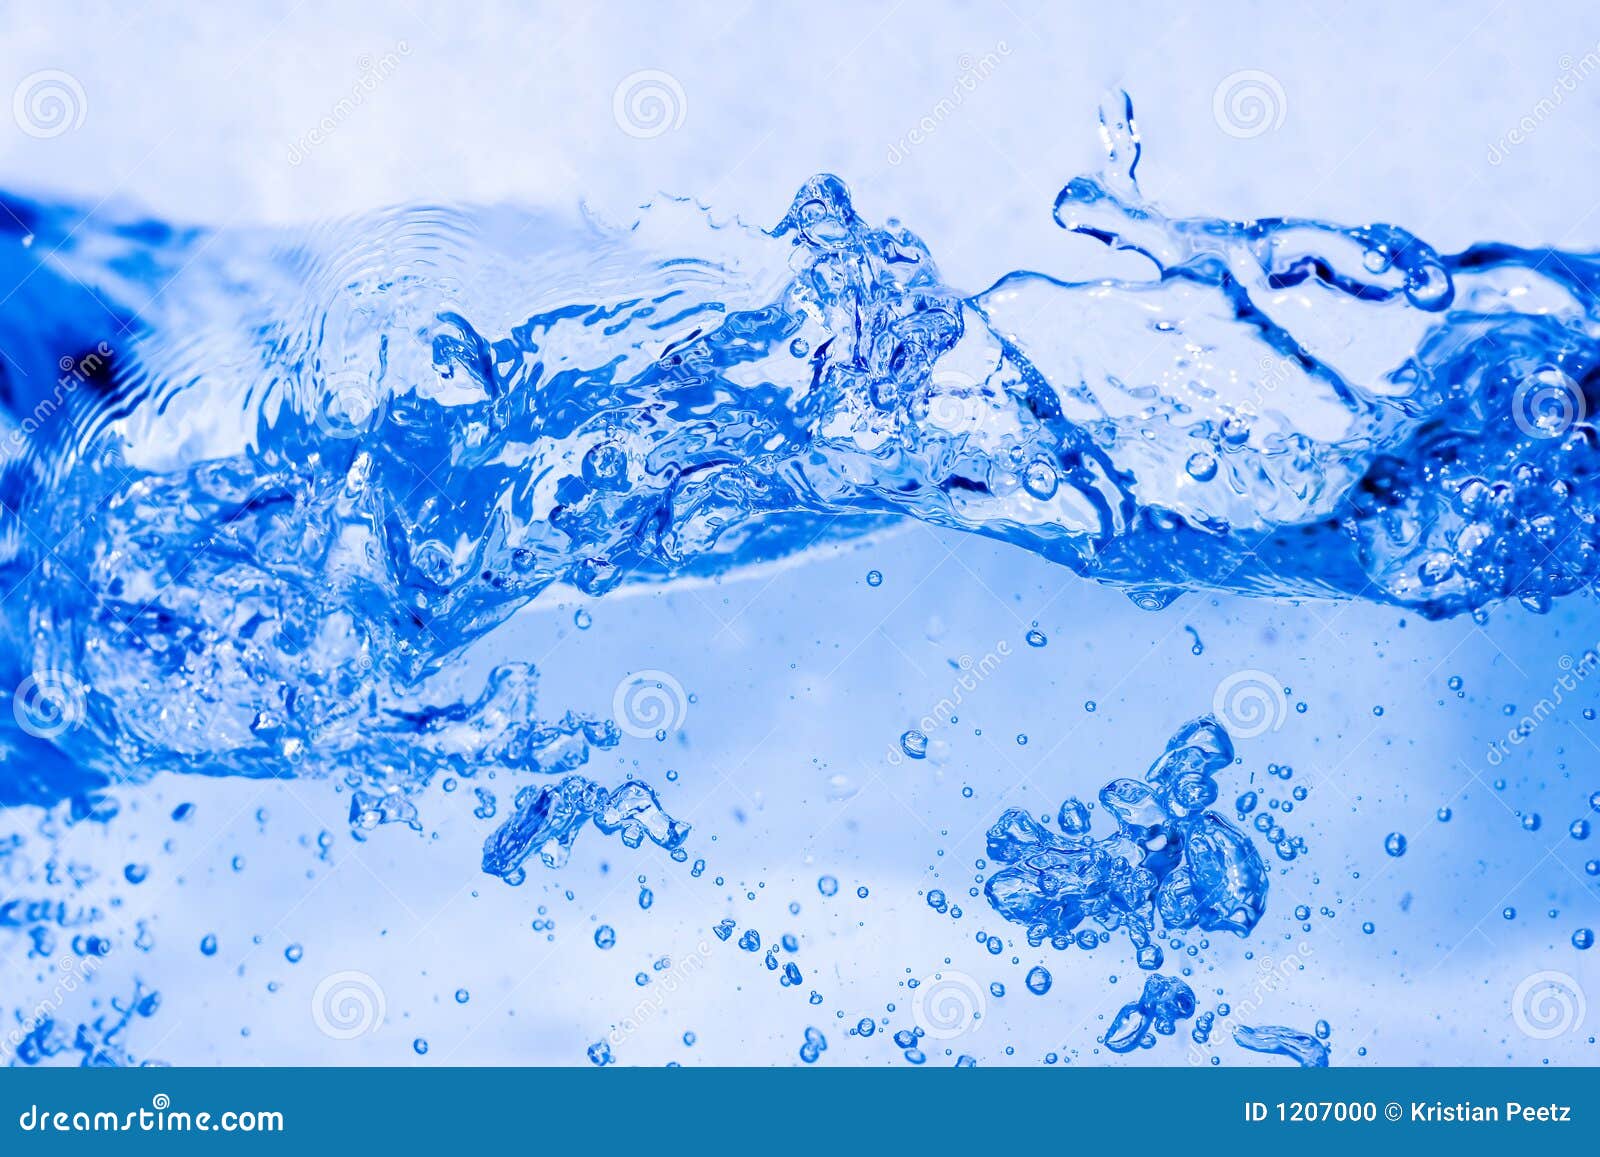  Liquide  serie Fond 1 De L eau  Photo stock Image  du 